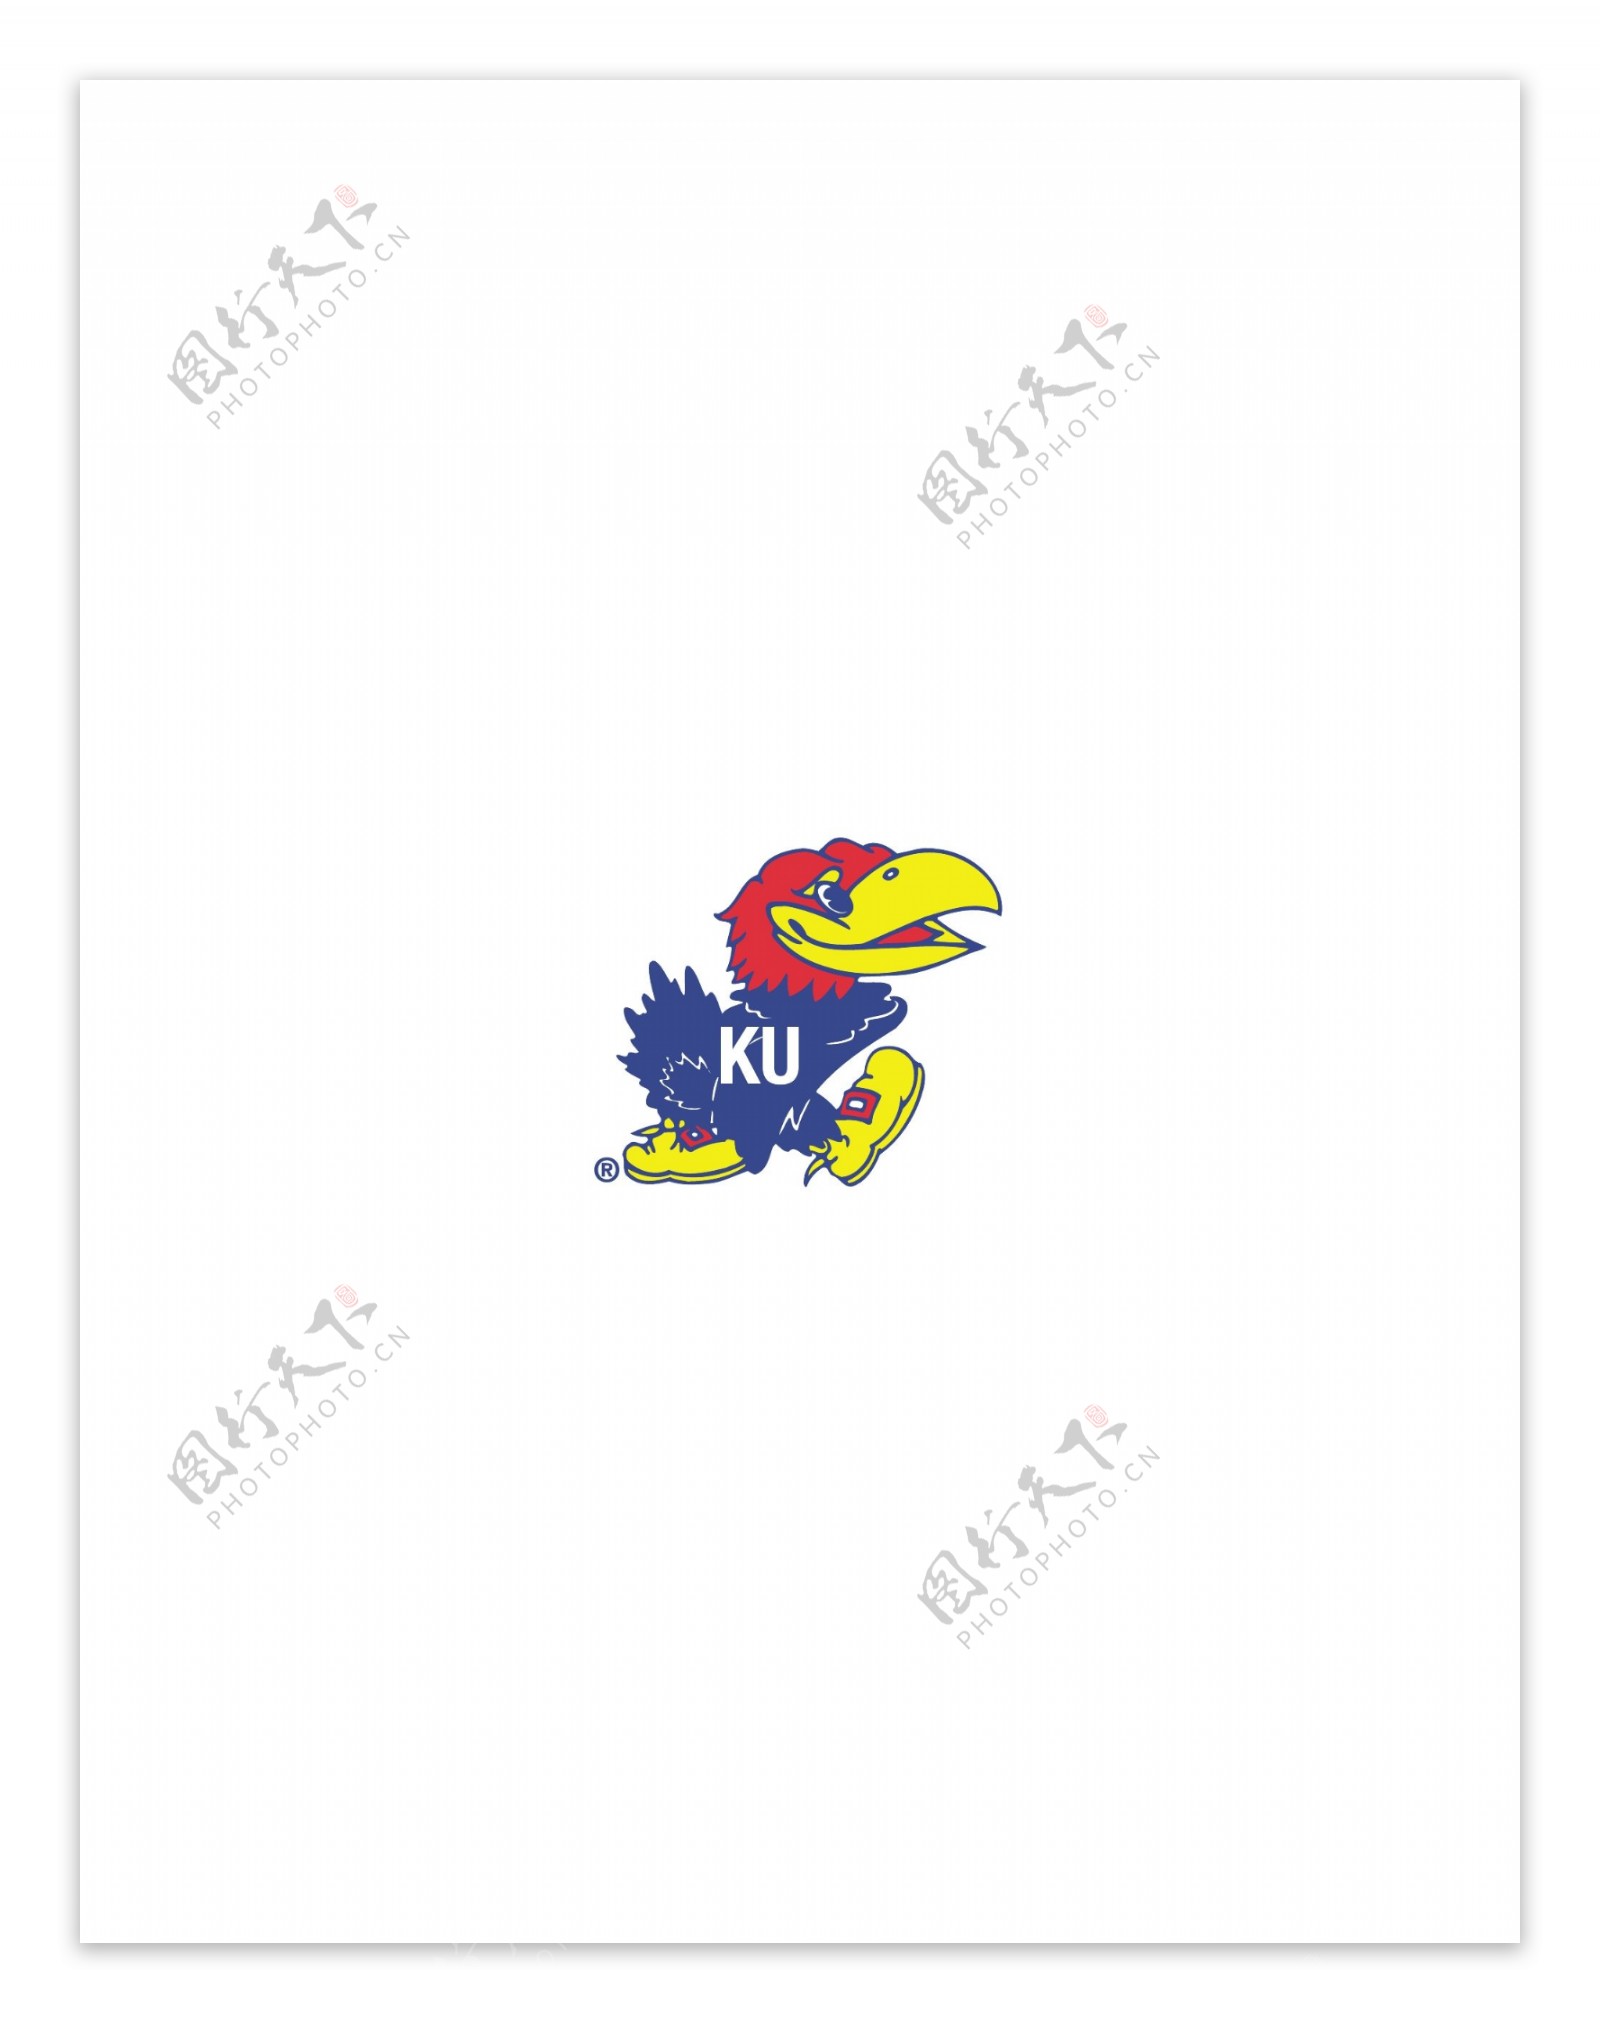 KansasJayhawkslogo设计欣赏KansasJayhawks高等学府标志下载标志设计欣赏